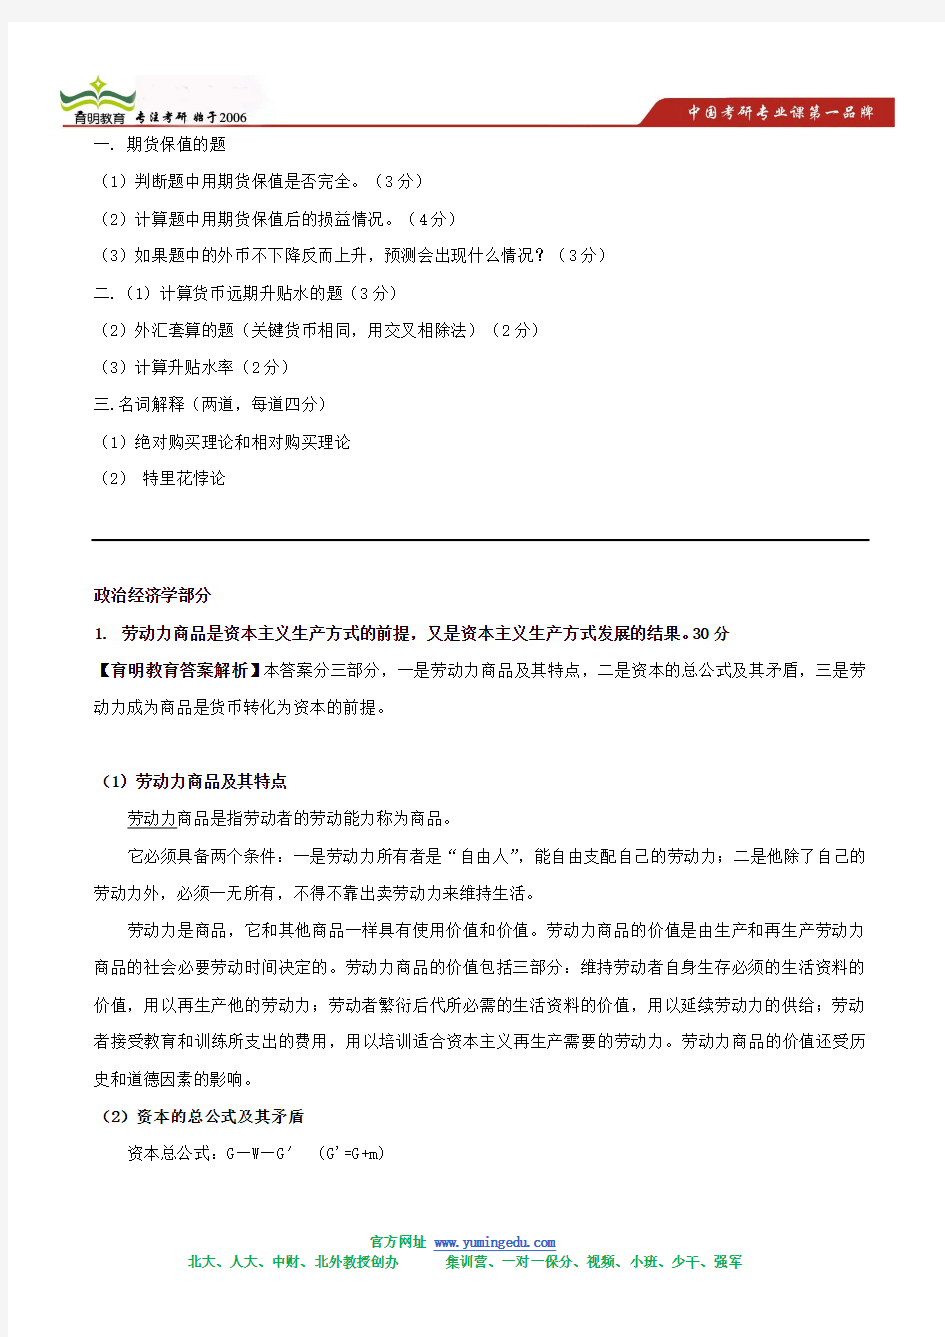 2006年北京大学经济学院考研复试真题及答案解析